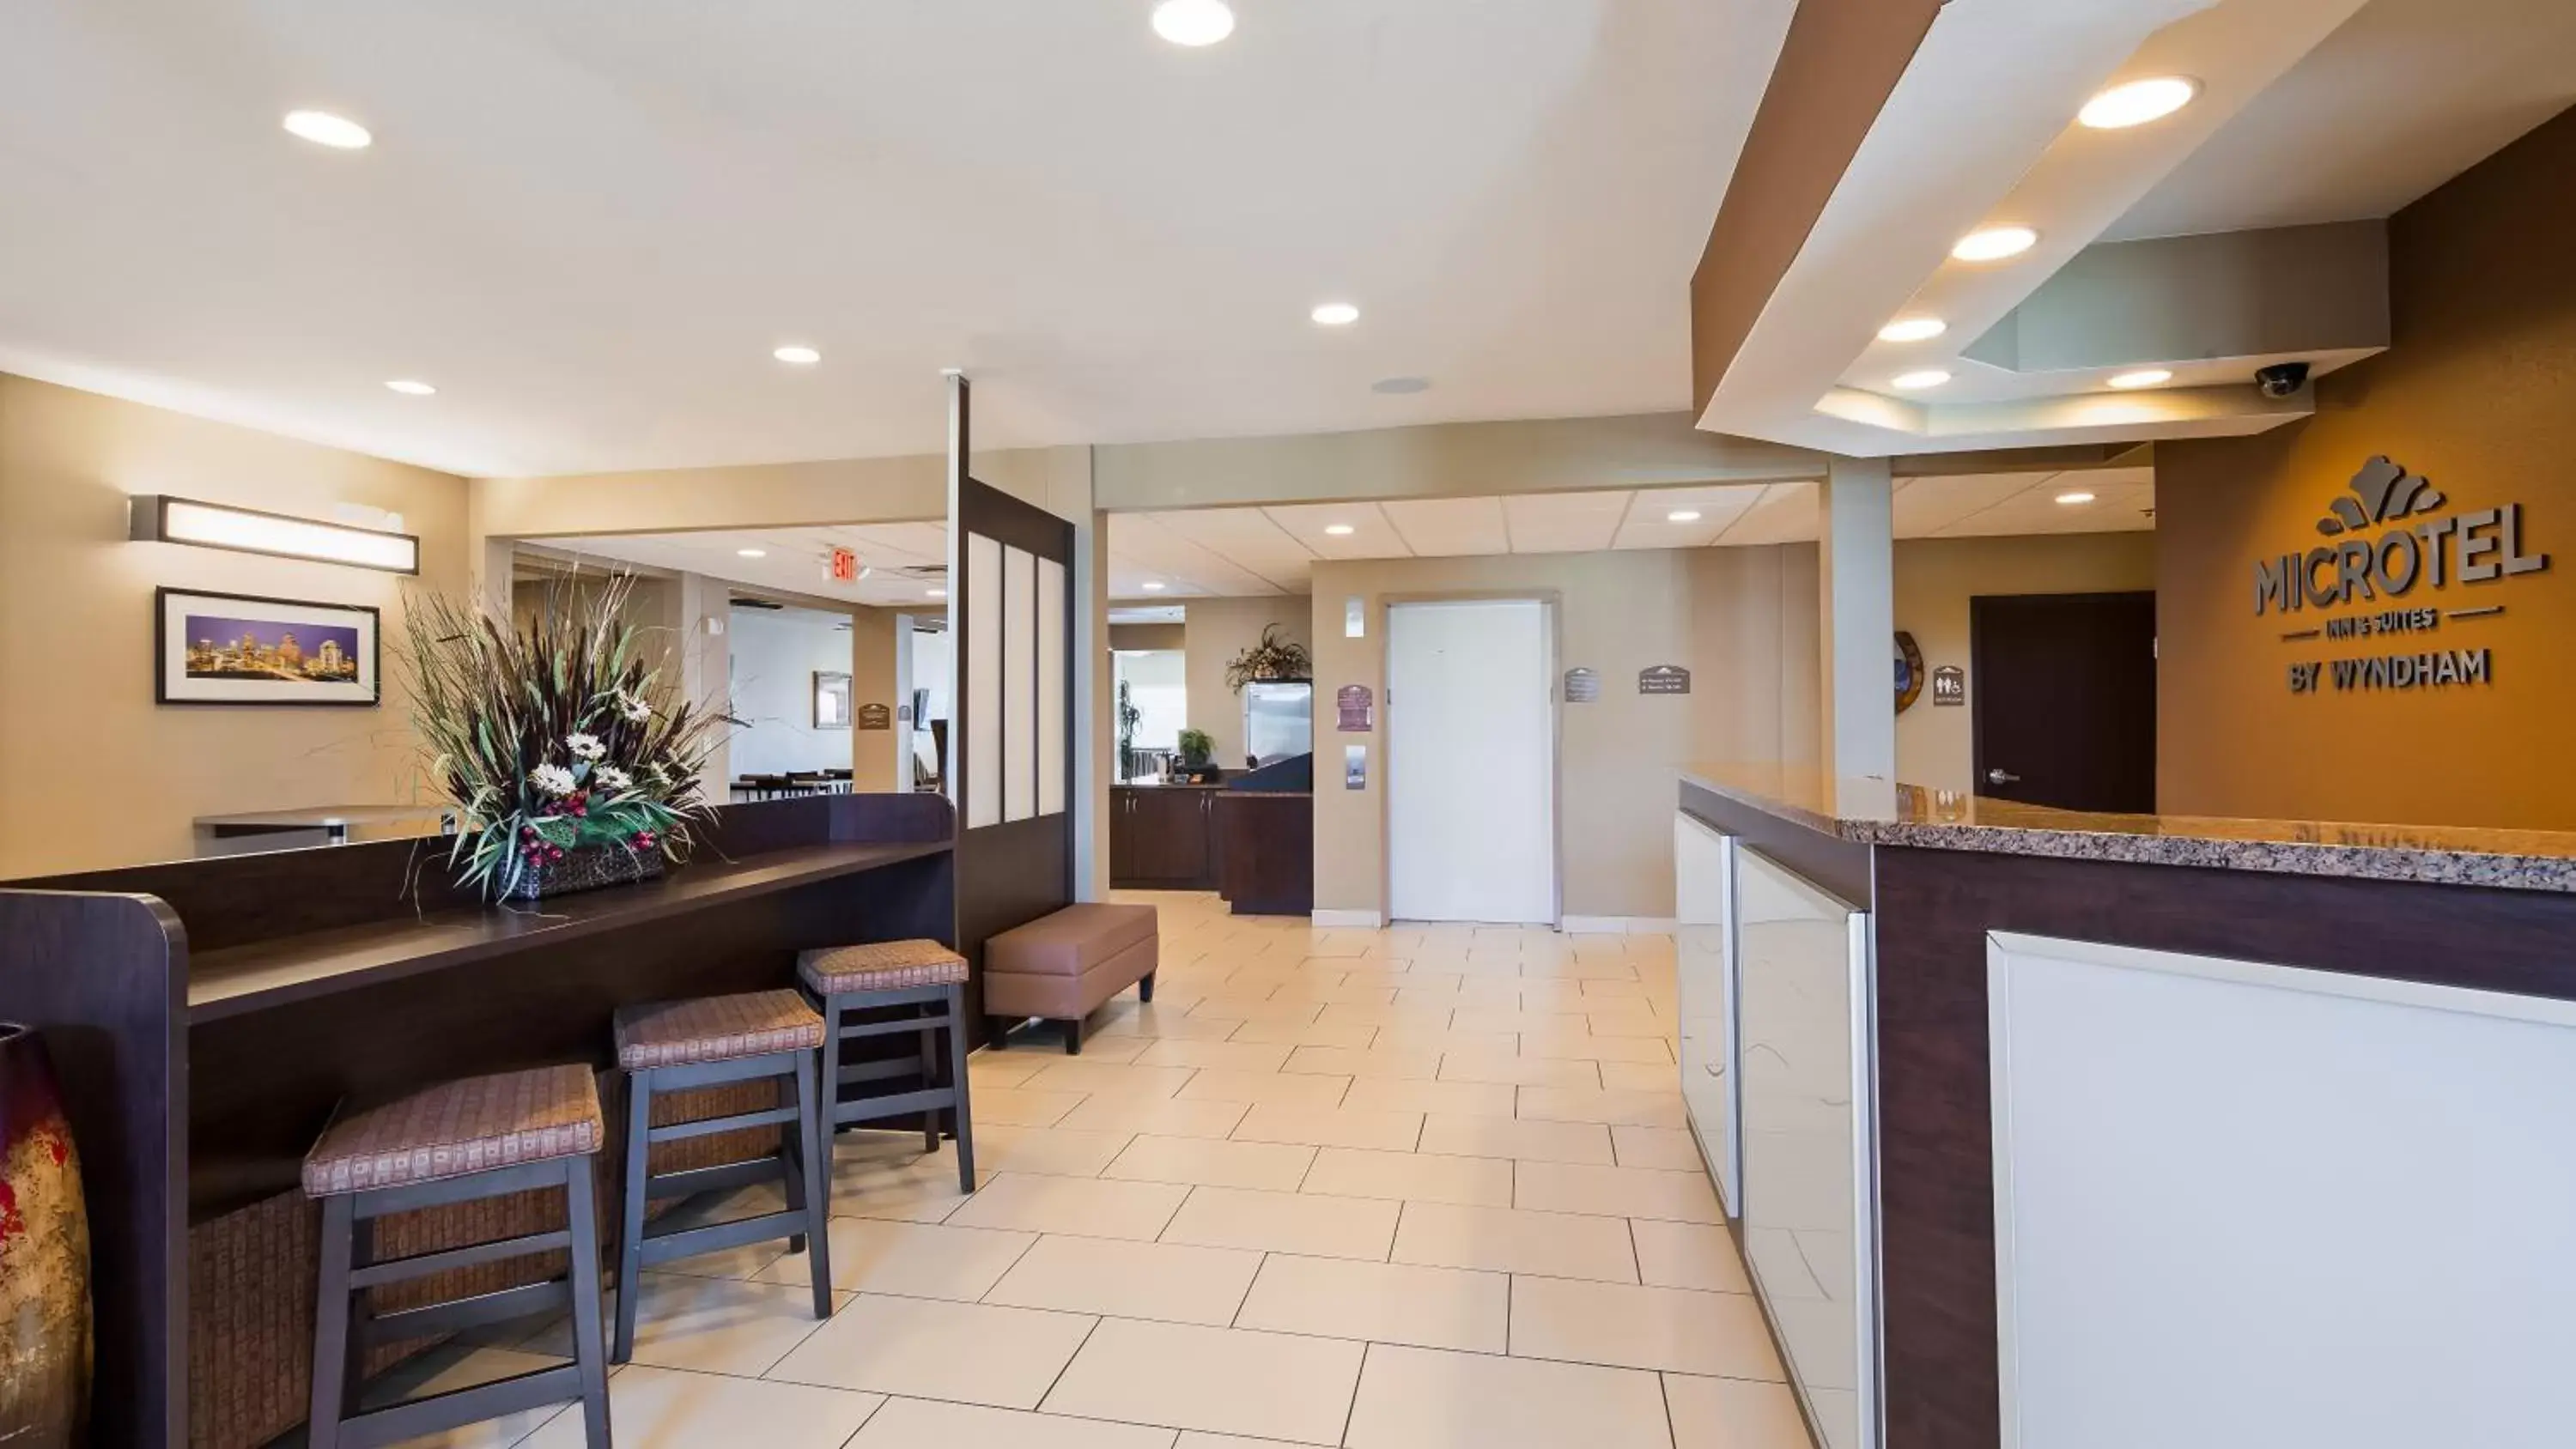 Lobby/Reception in Microtel Inn & Suites by Wyndham Buda Austin South